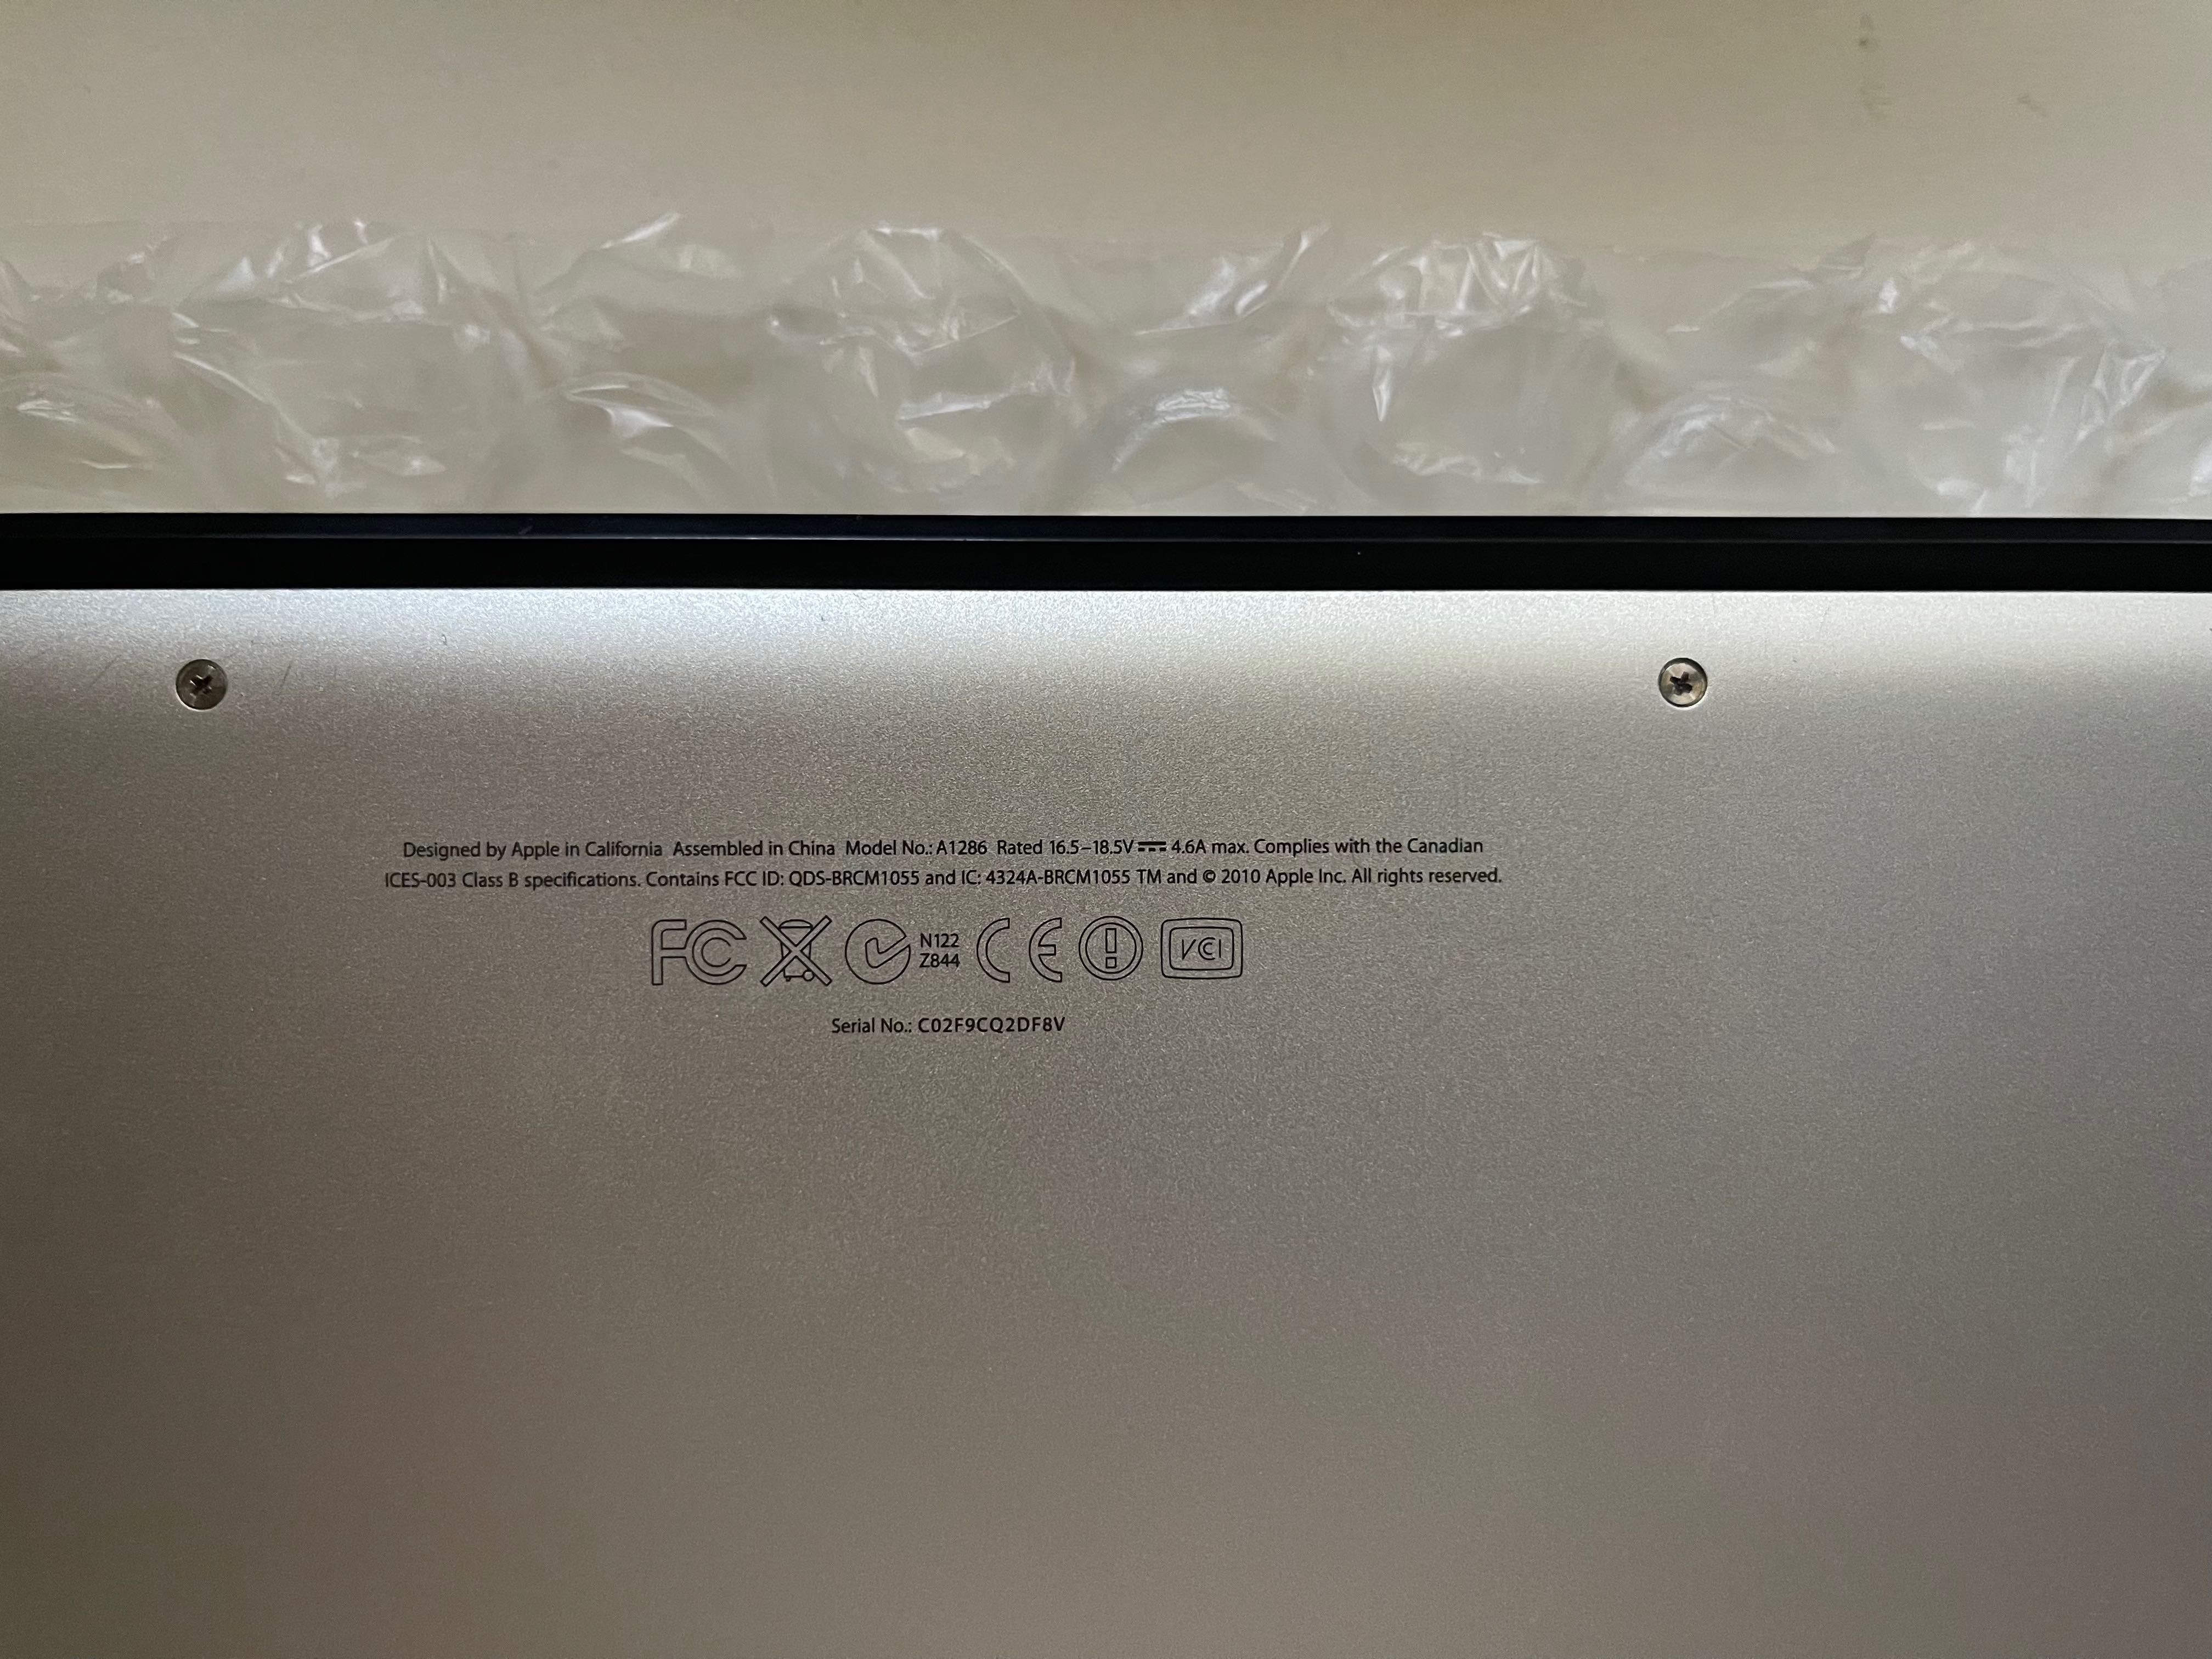 MacBook Pro 15" 2011 A1286 MC721LL/A MacBookPro8,2